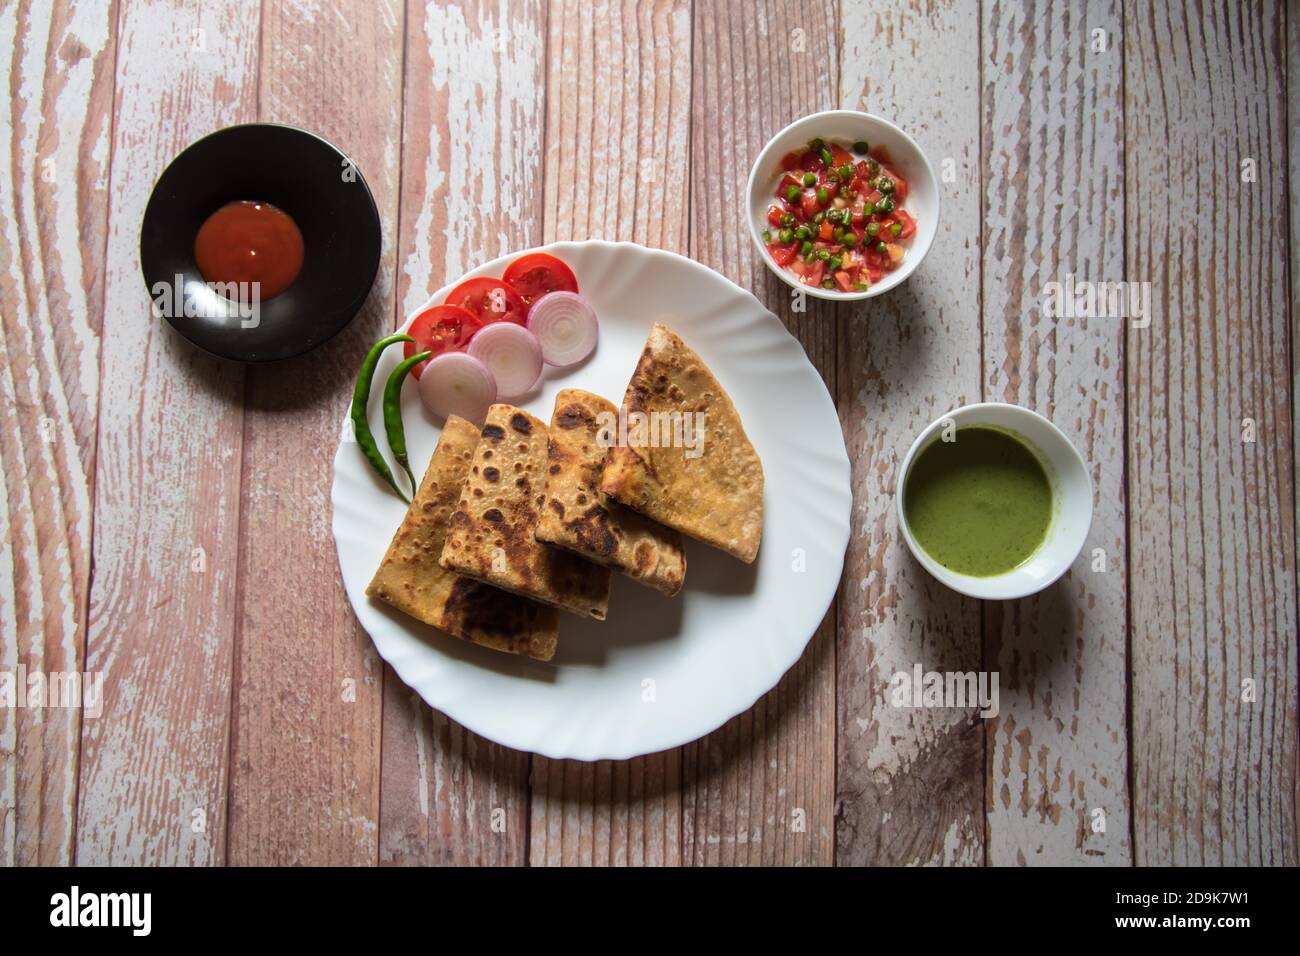 Vista dall'alto dell'alu paratha insieme agli ingredienti per la colazione Foto Stock